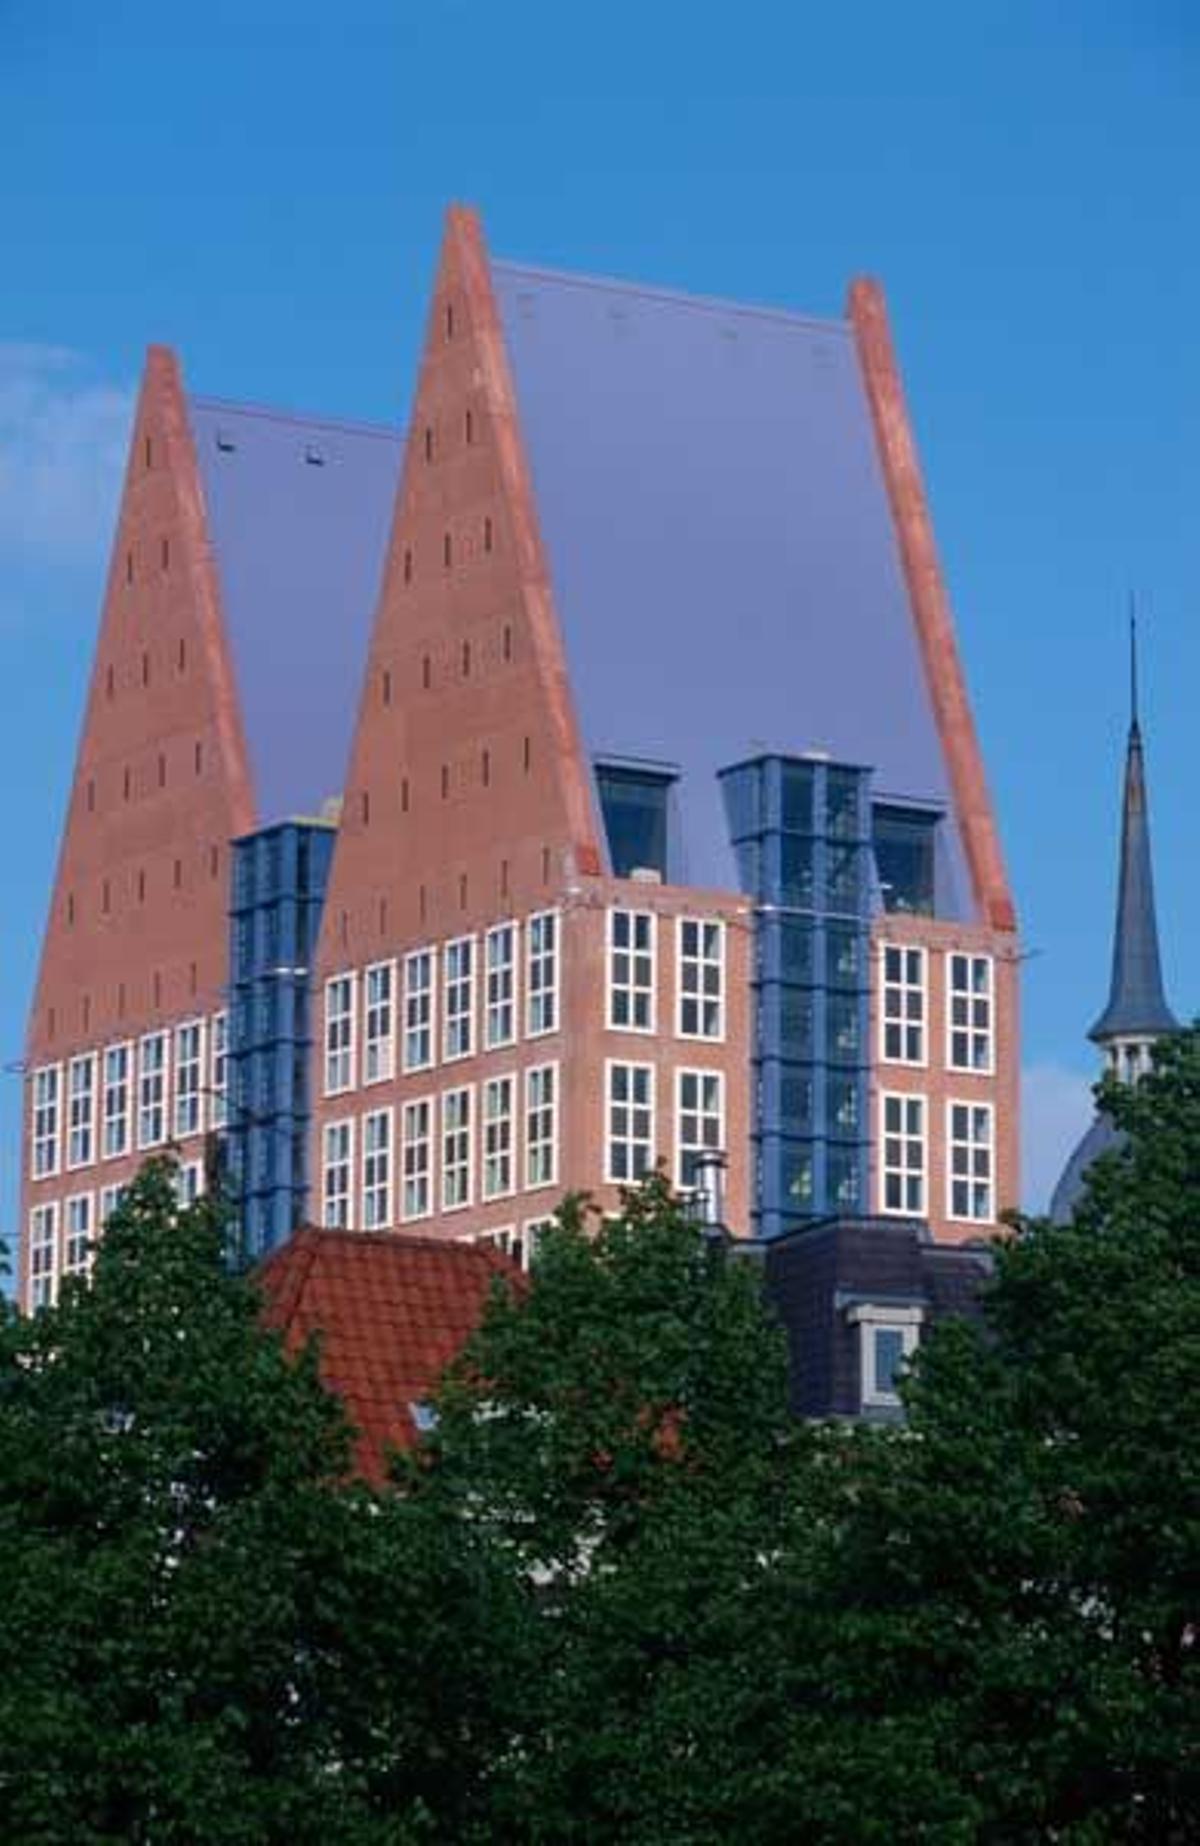 Edificio típico de La Haya